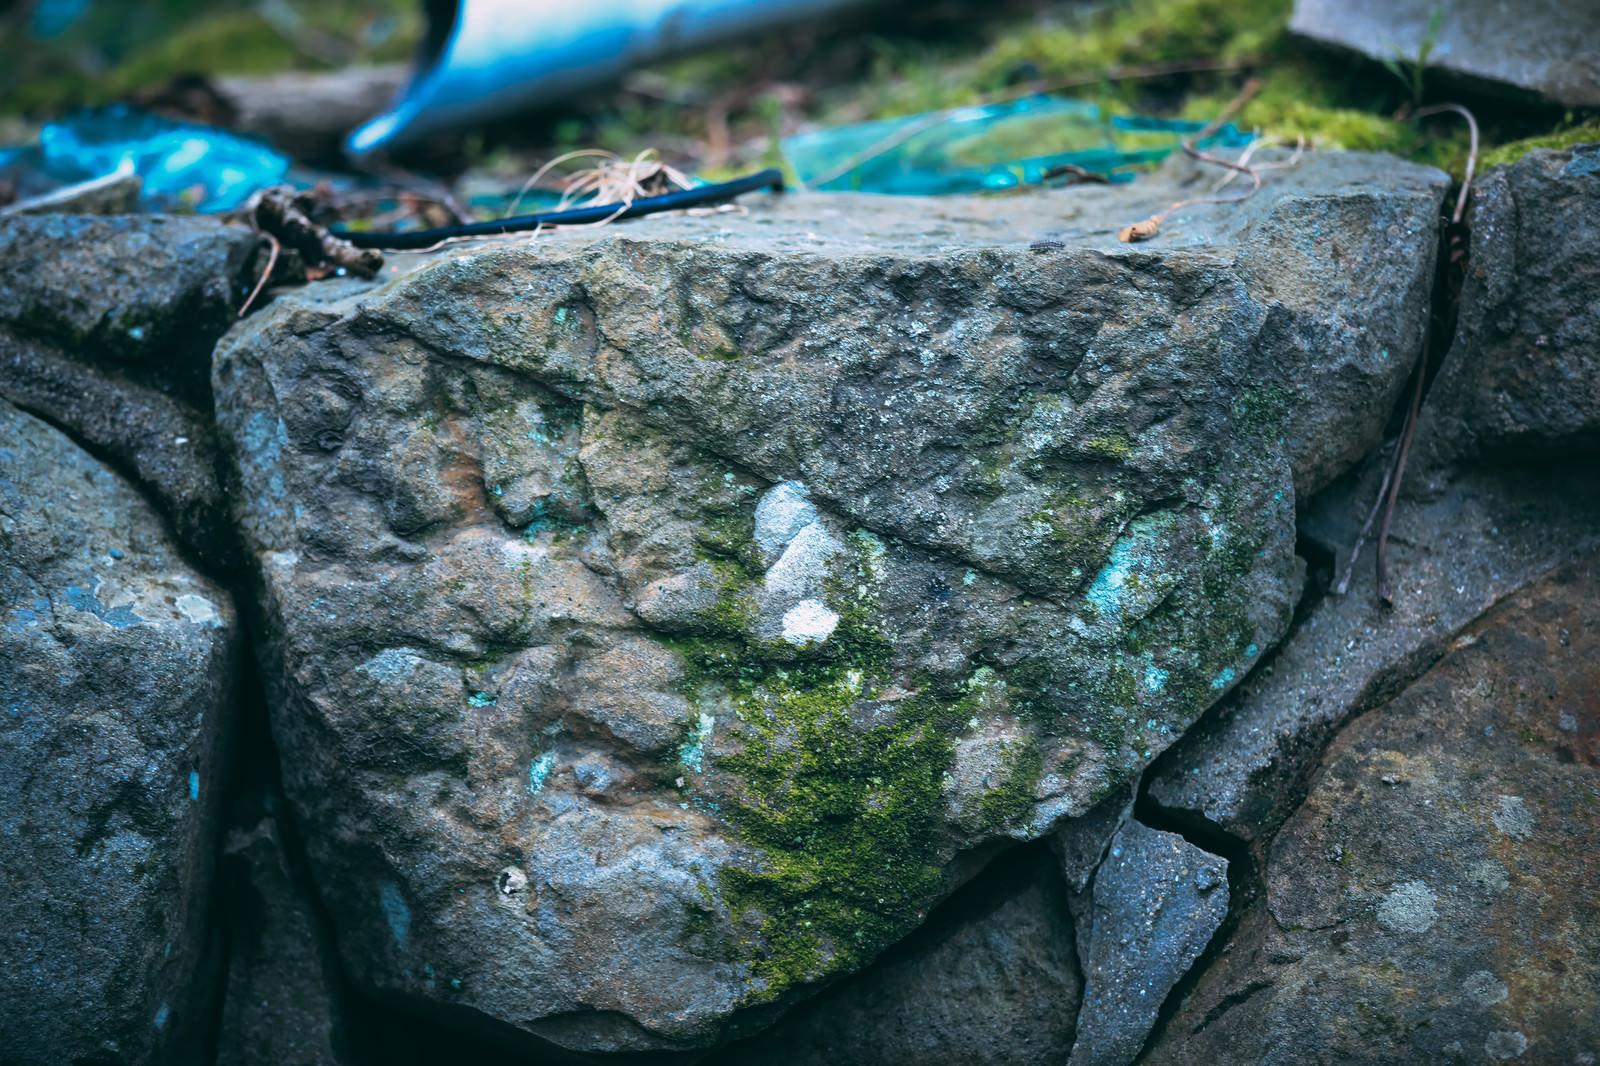 「汚れと苔の生えた岩 | フリー素材のぱくたそ」の写真